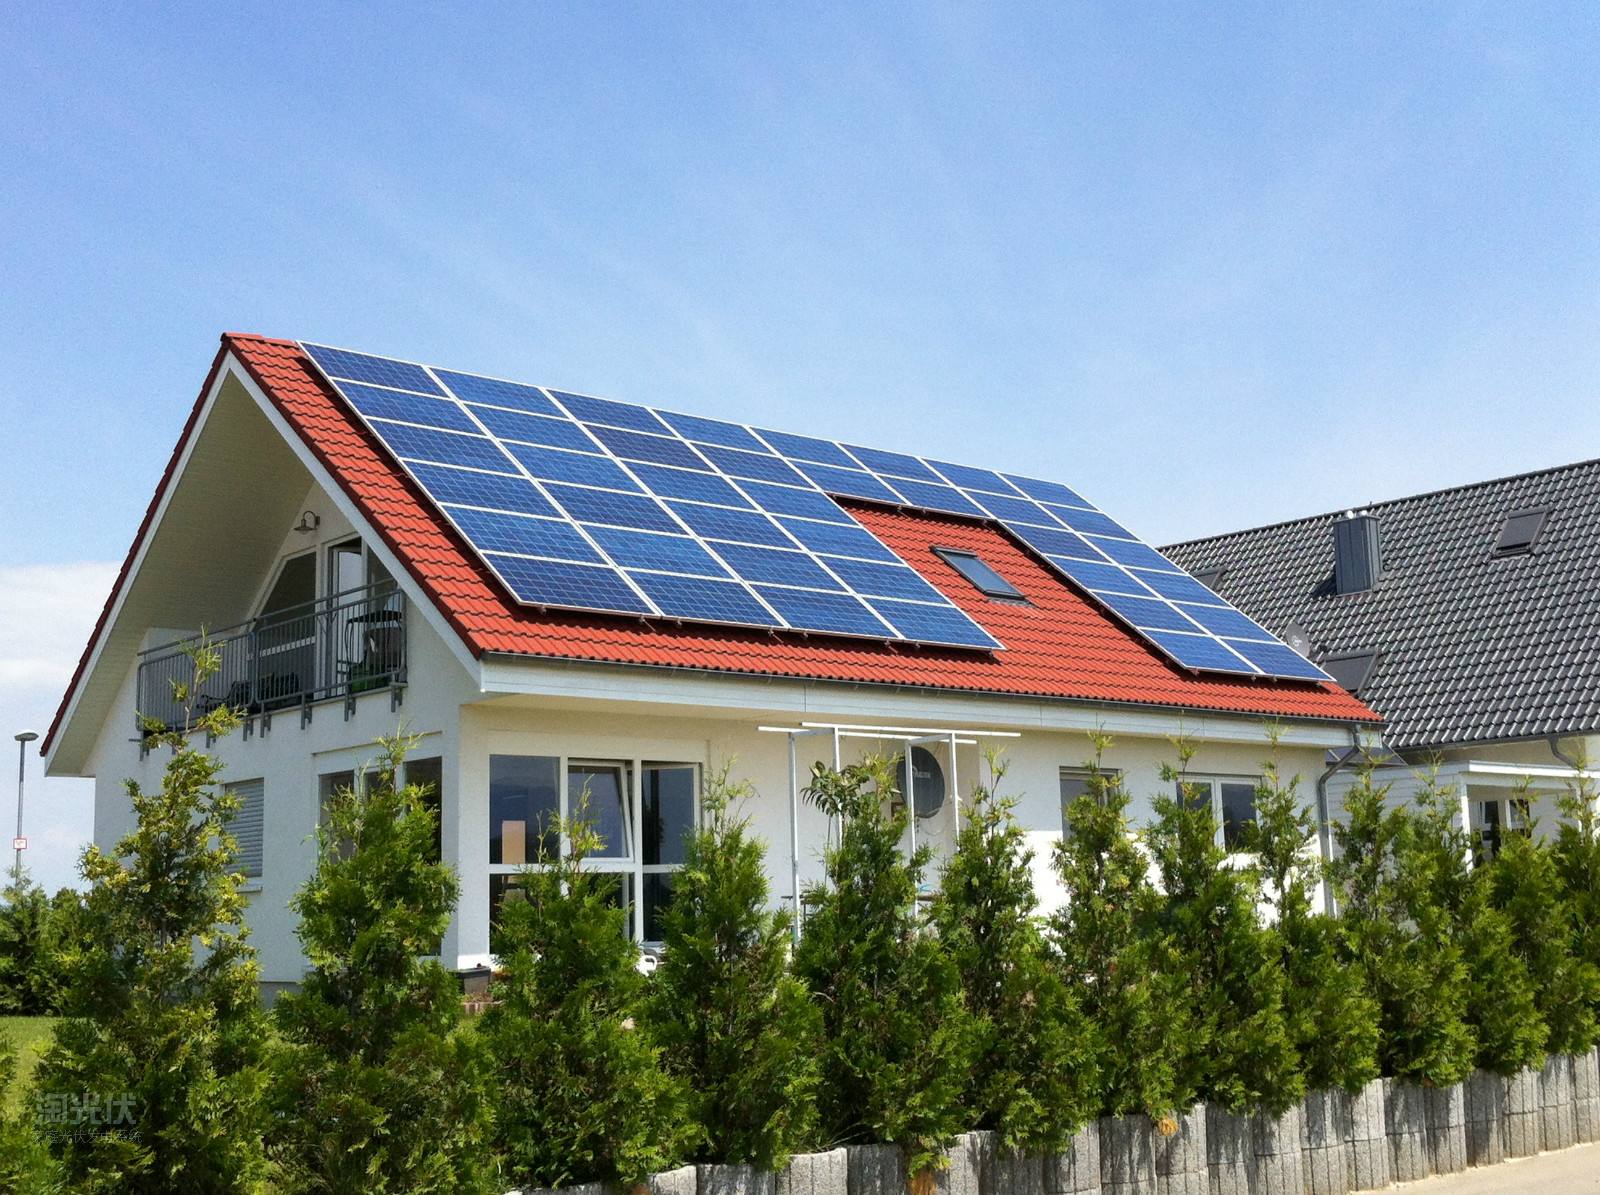 poco conocimiento sobre el sistema fotovoltaico